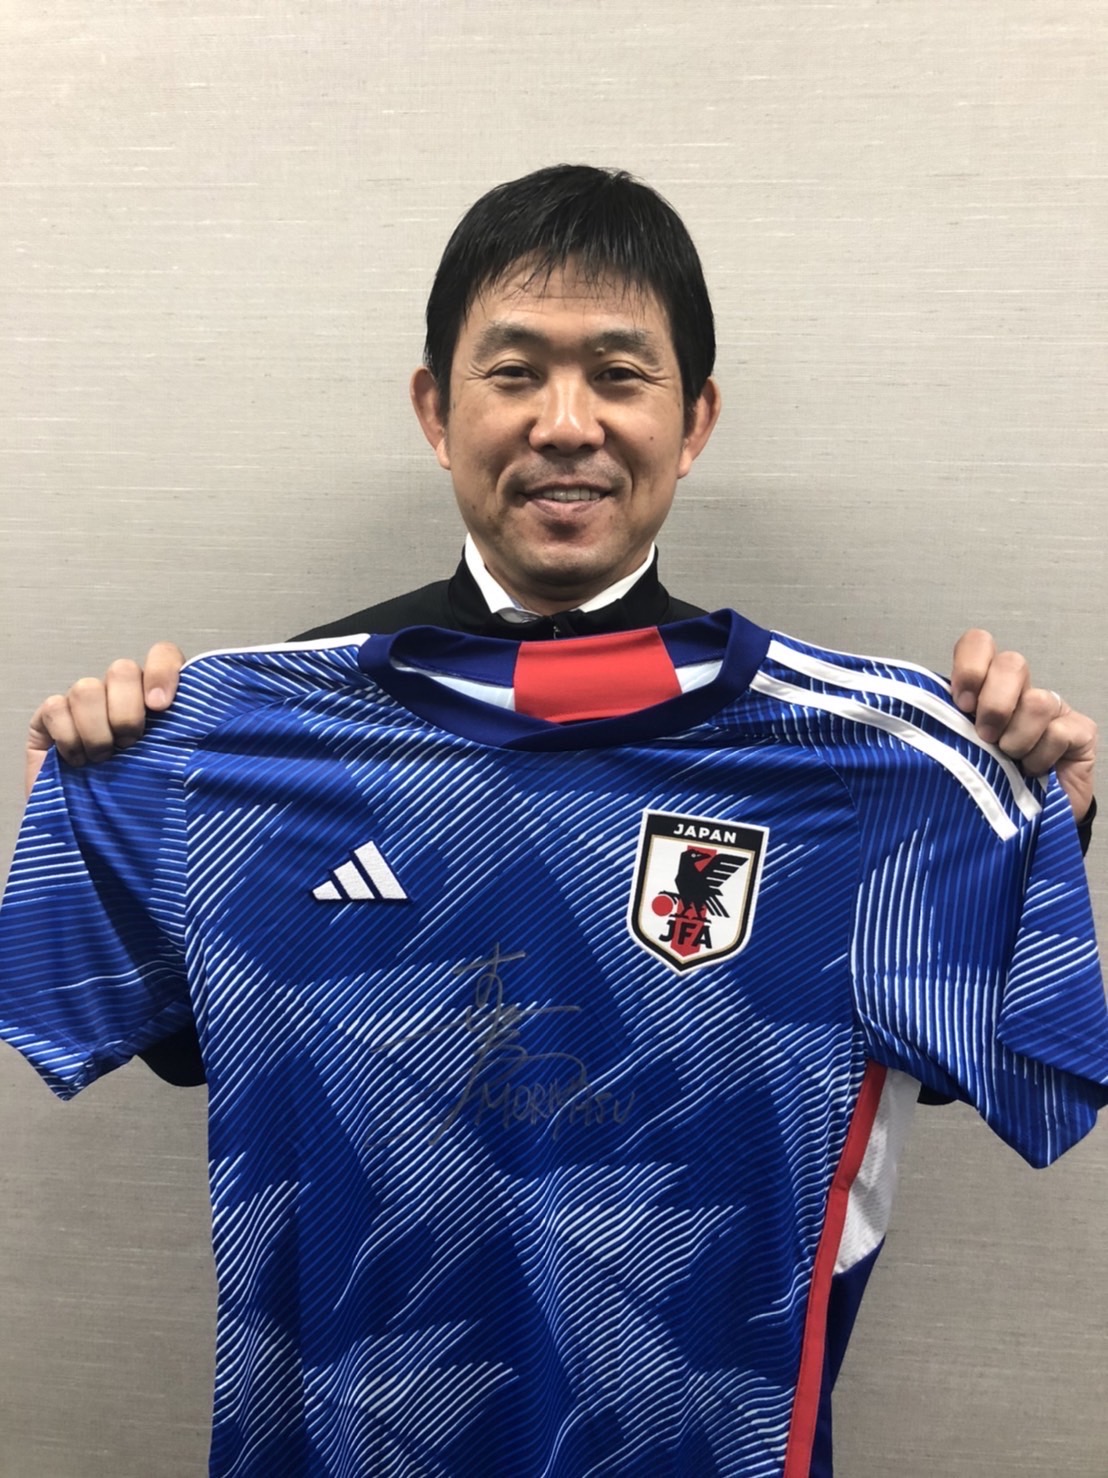 サッカー日本代表 Jfa Samuraiblue Twitter